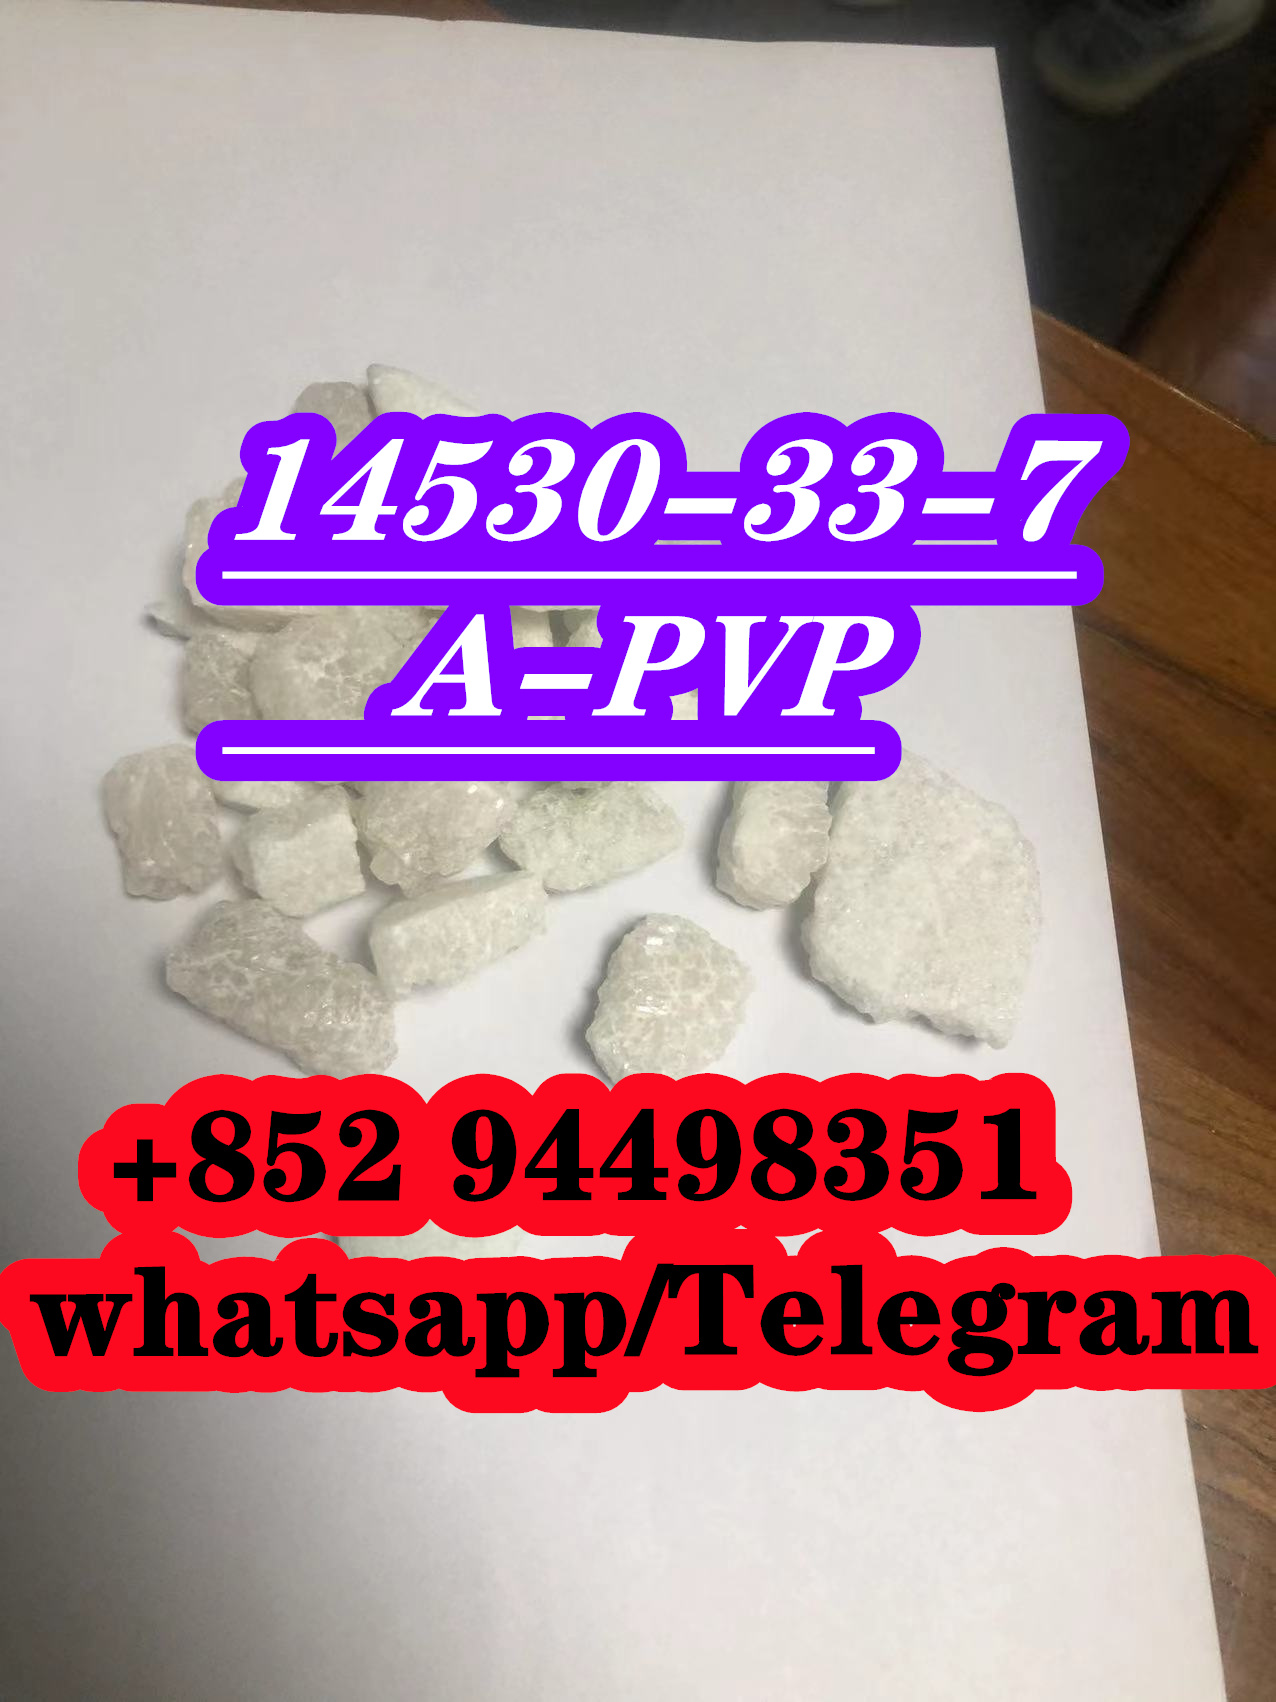 A-pvp Apihp CAS 14530-33-7Flakka,nev,Cars,Free Classifieds,Post Free Ads,77traders.com